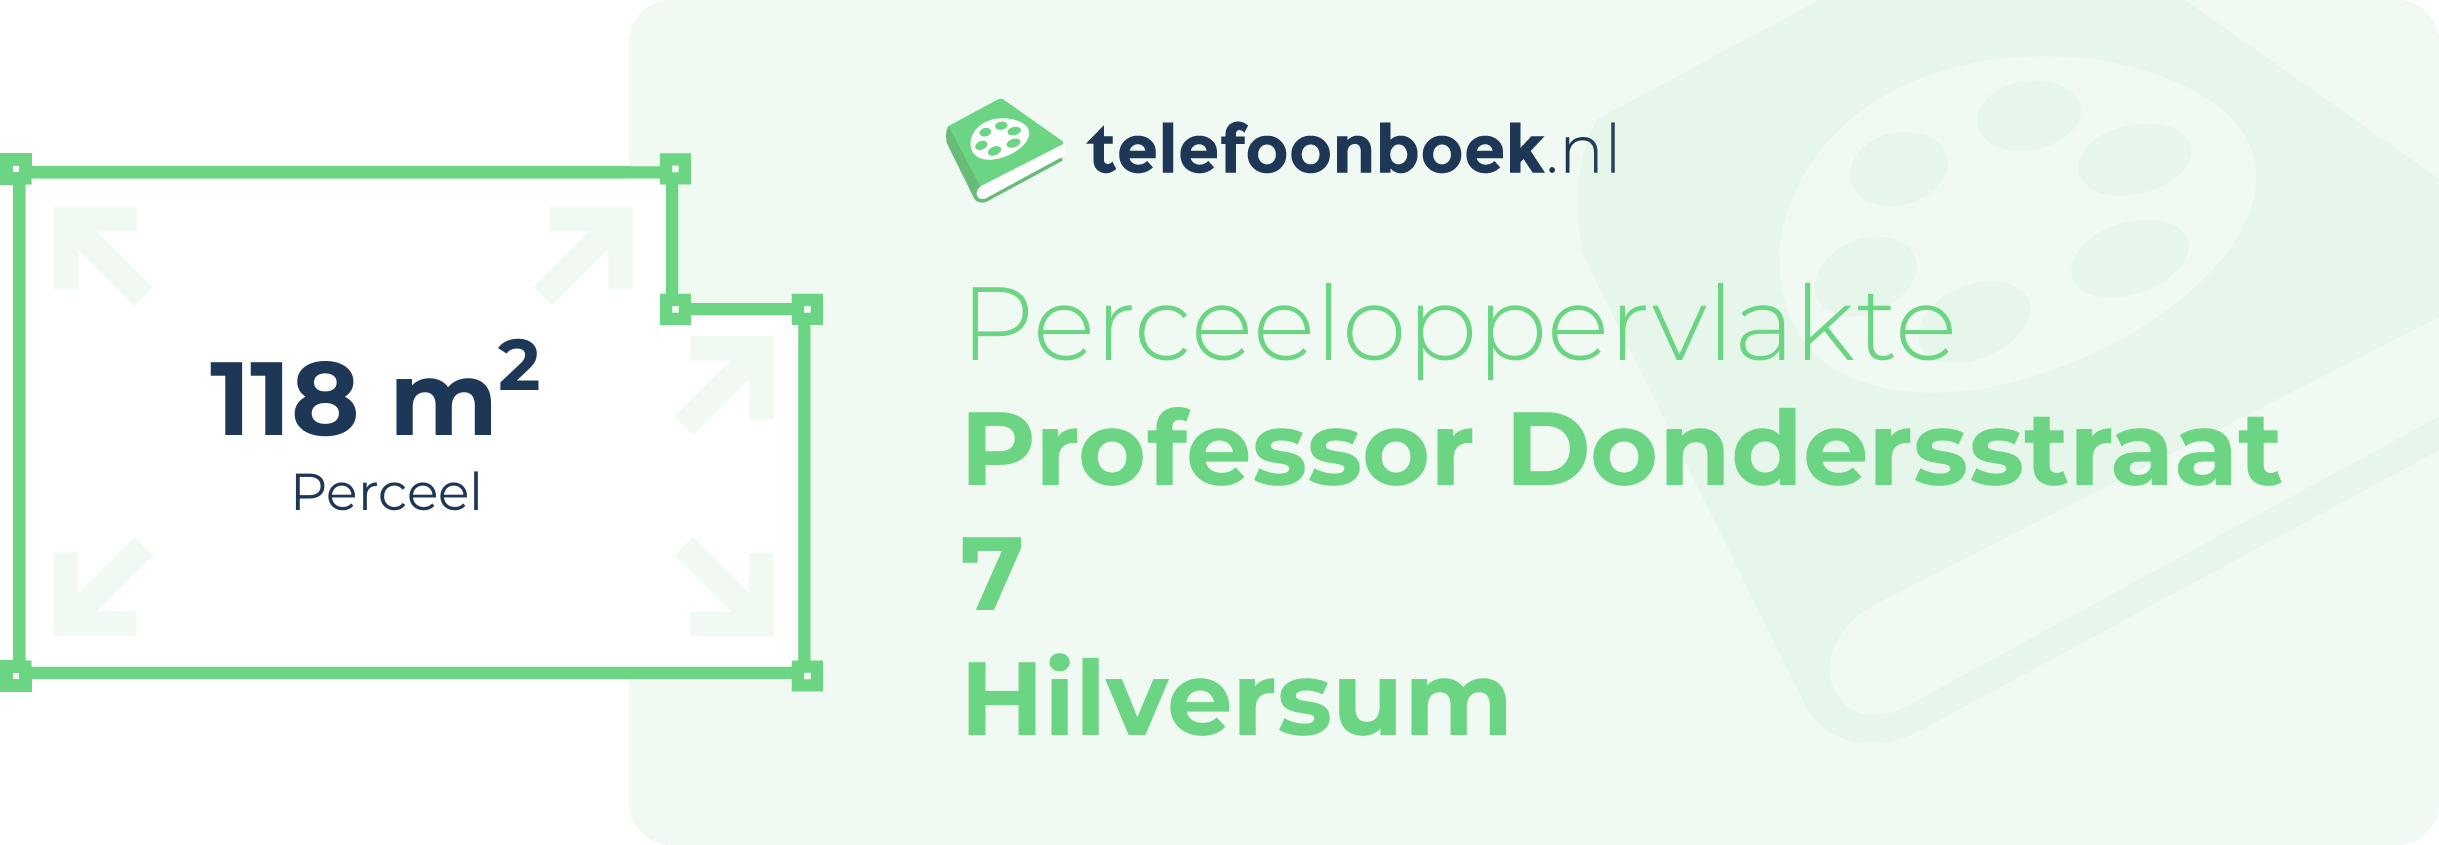 Perceeloppervlakte Professor Dondersstraat 7 Hilversum